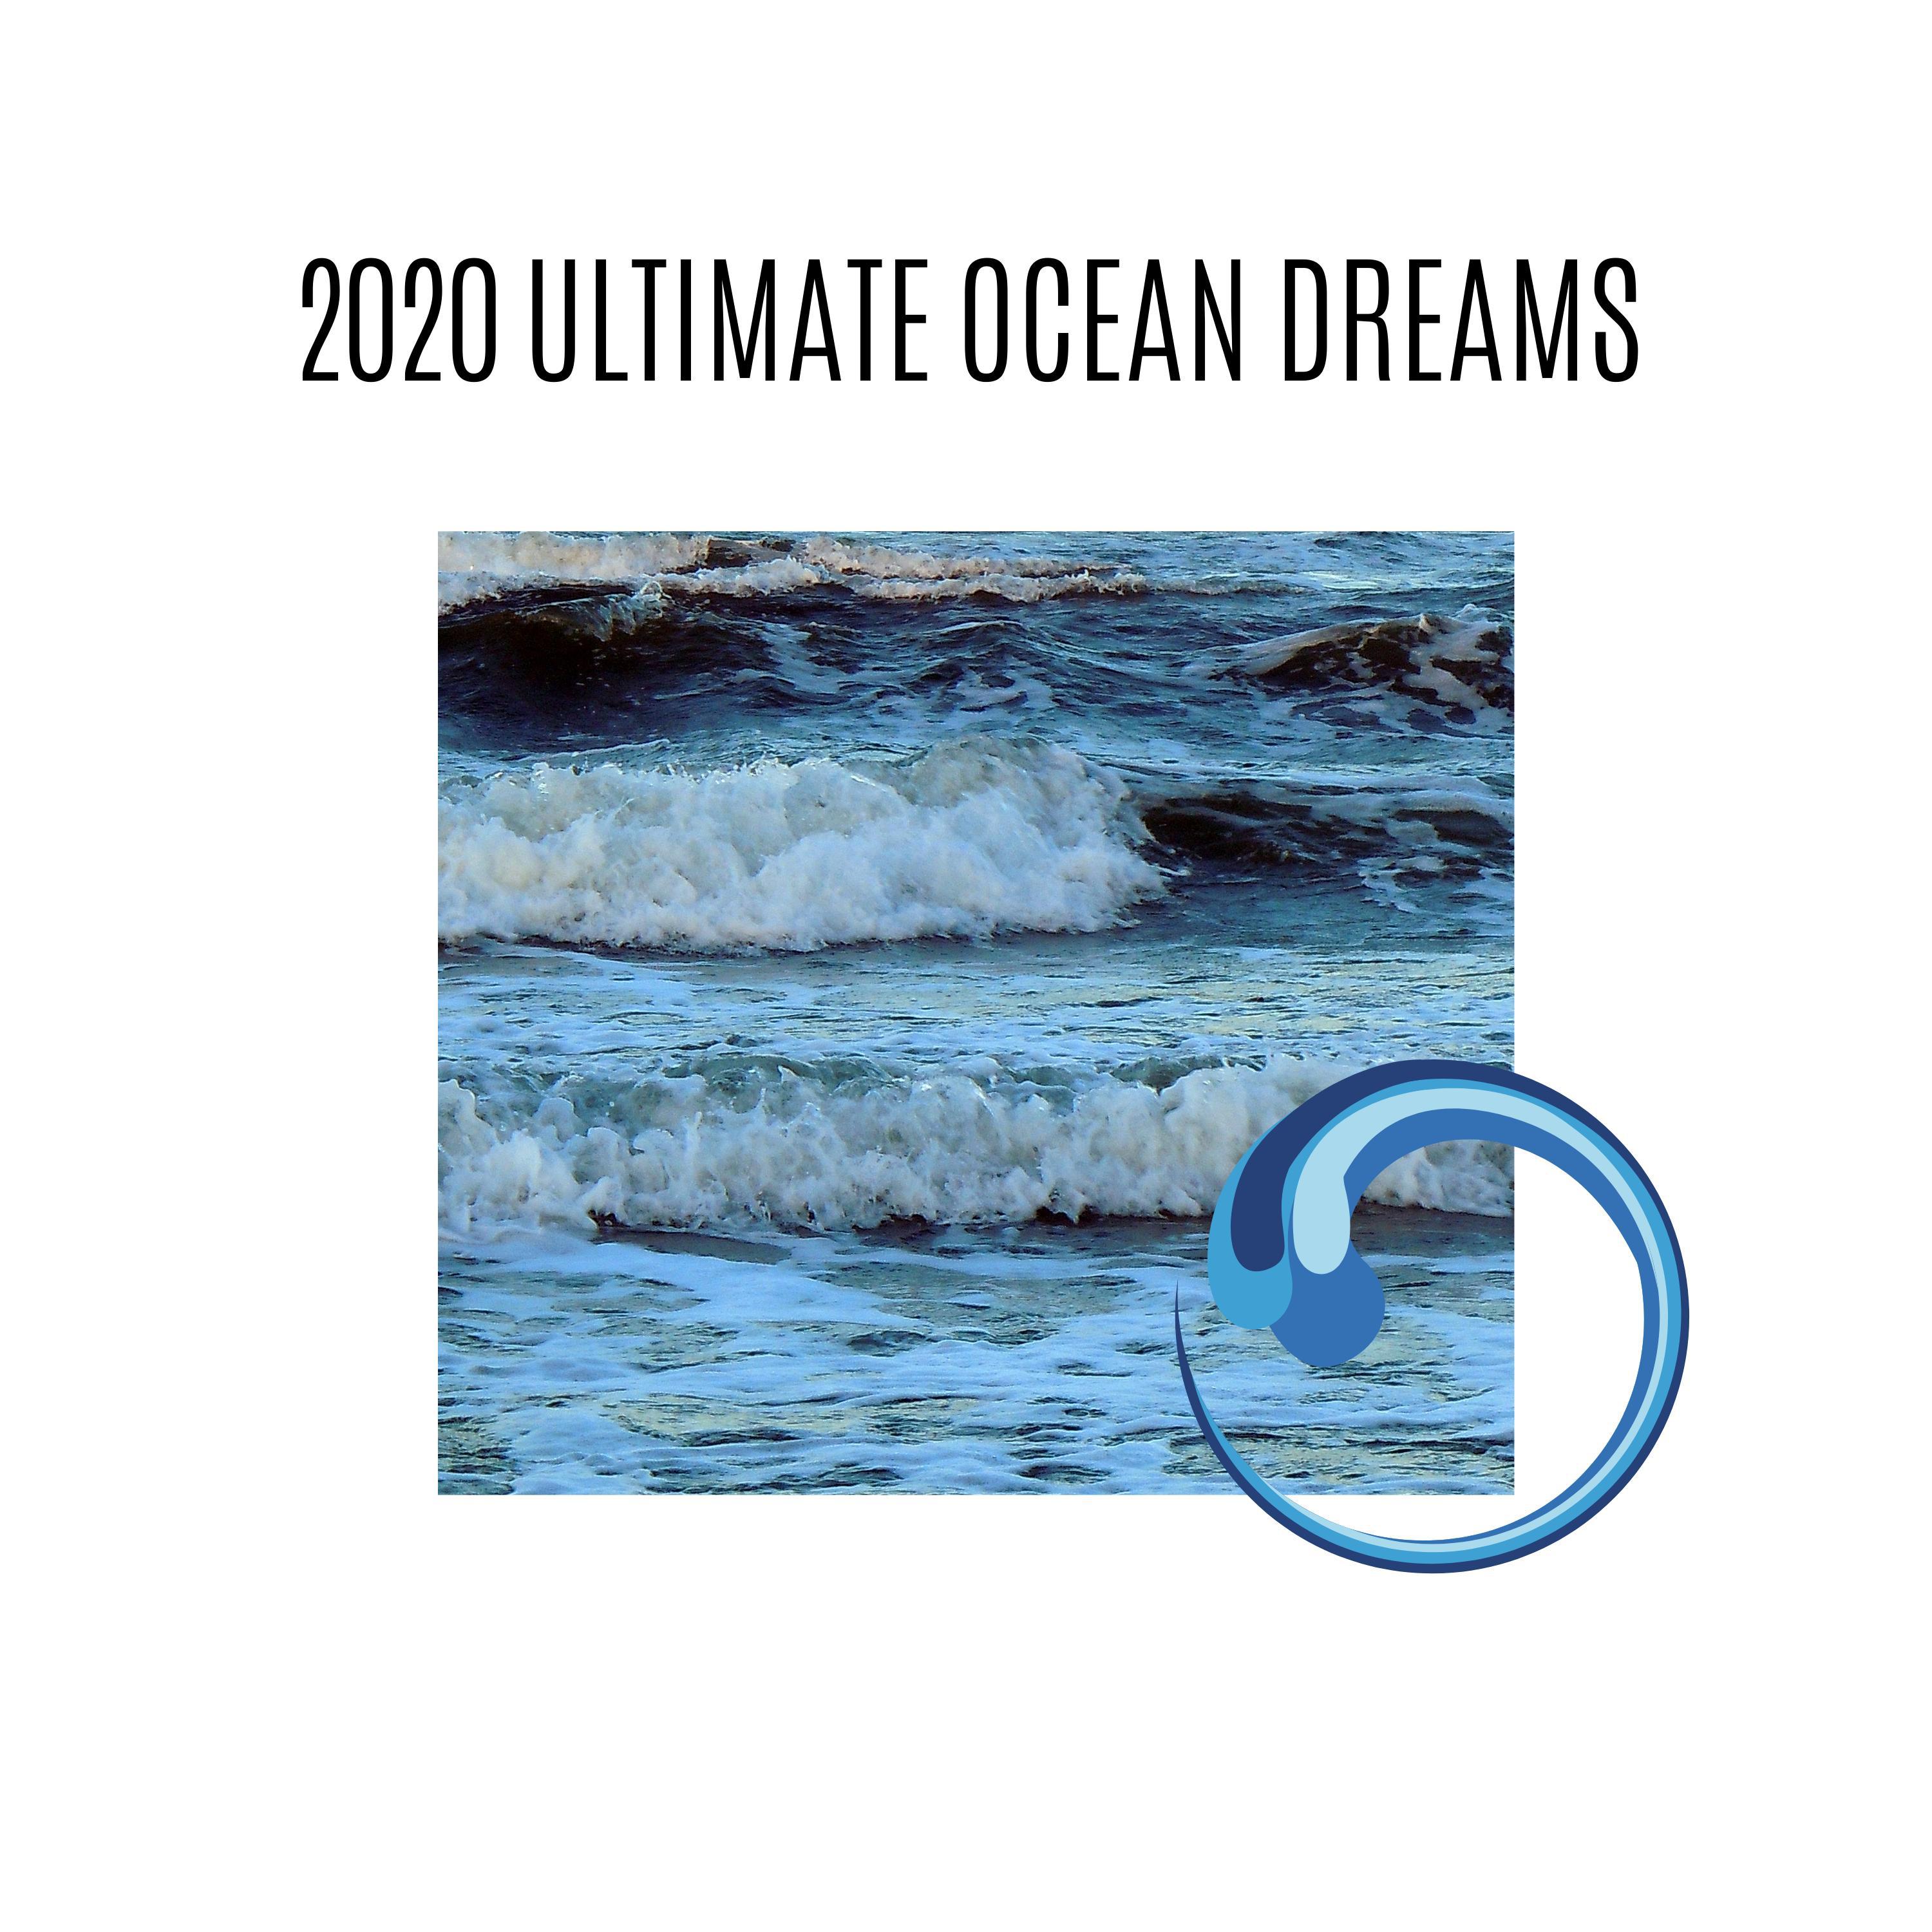 Meditative Ocean Music - Oceanfront Beach